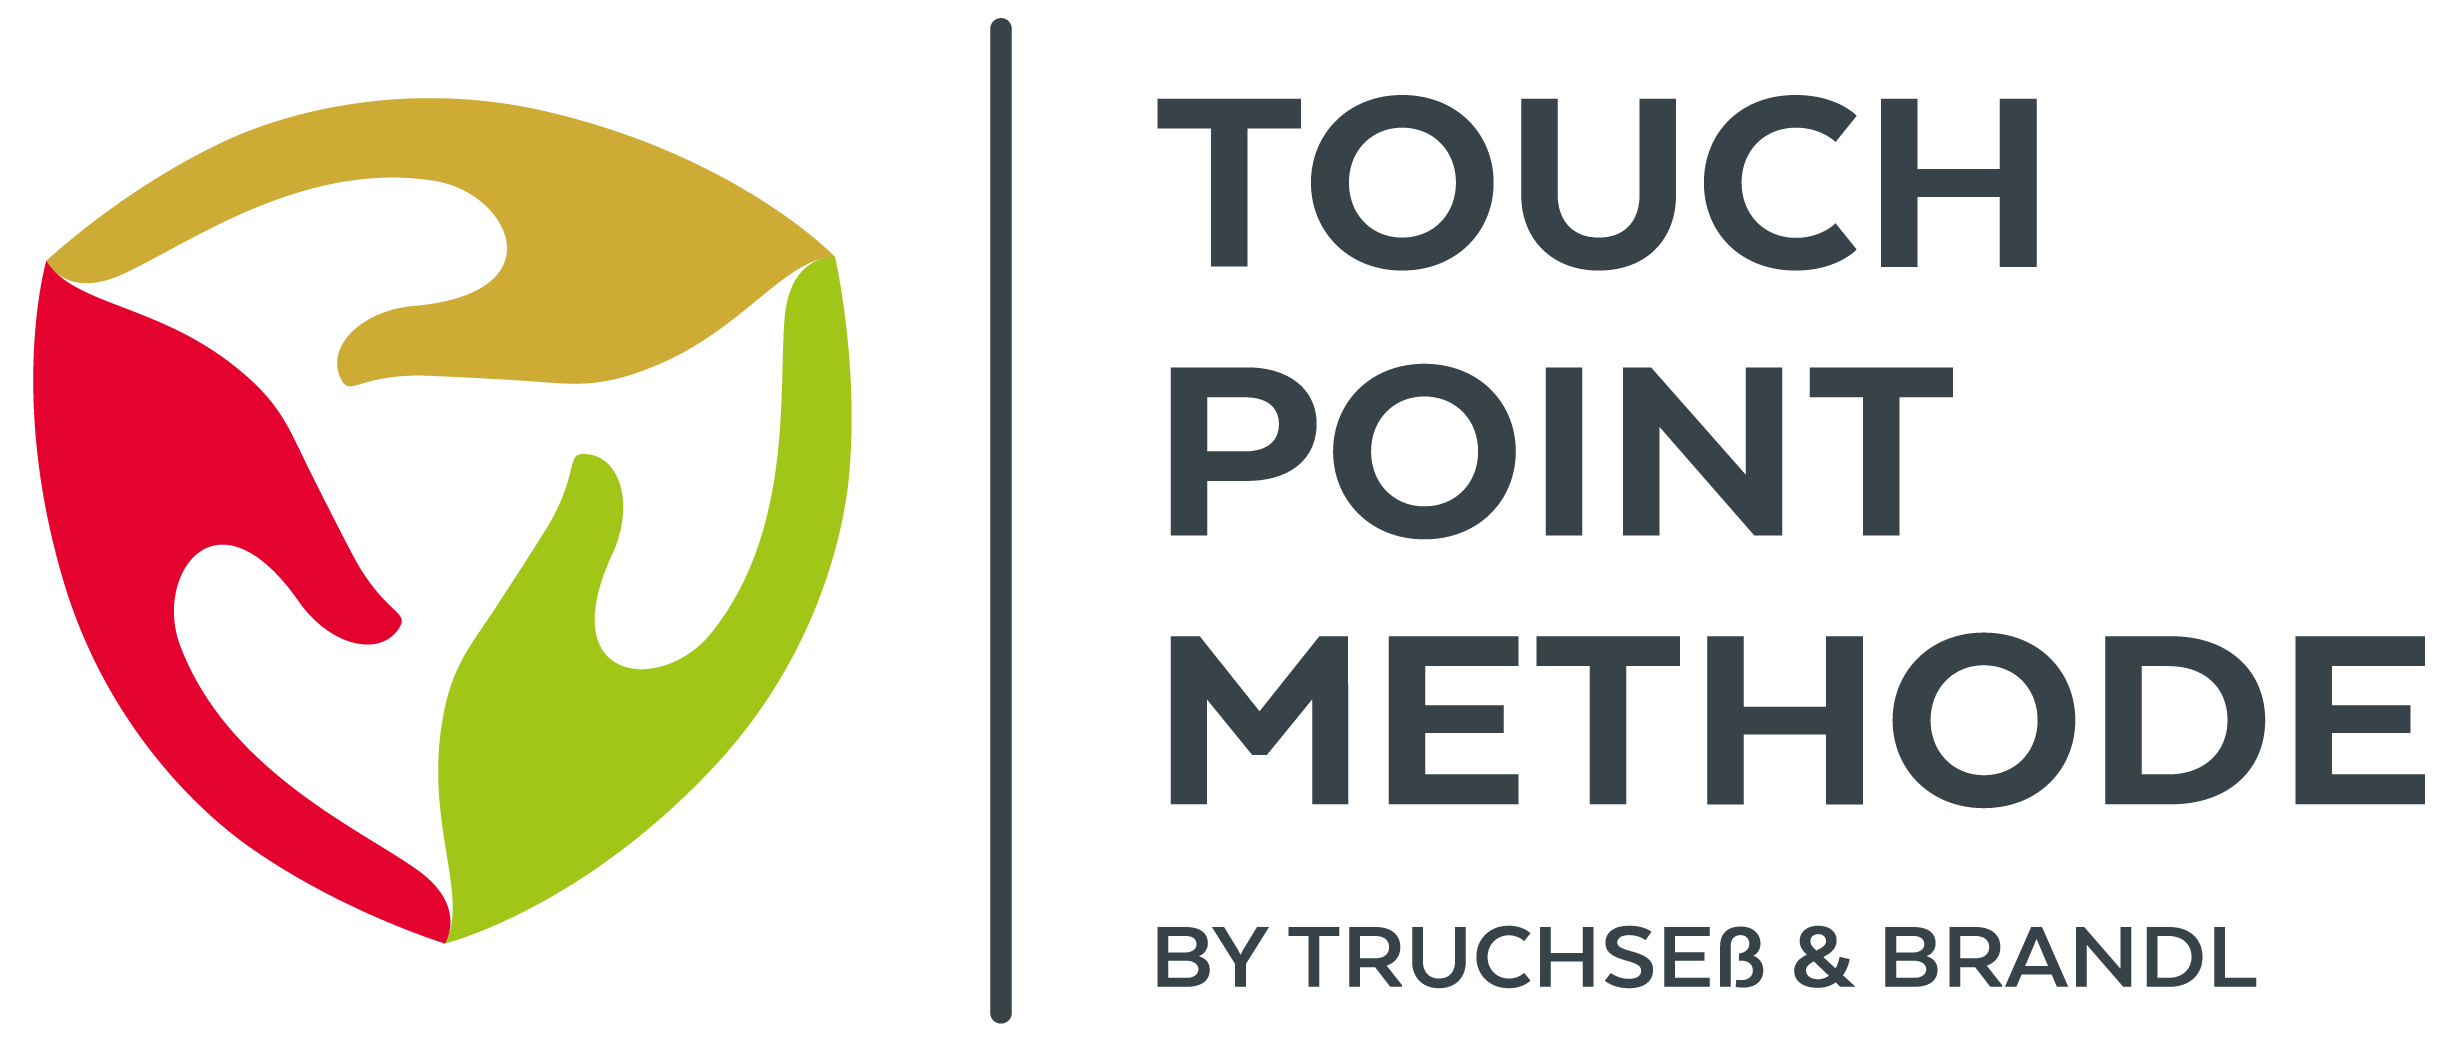 Touch Point Methode by Truchseß & Brandl